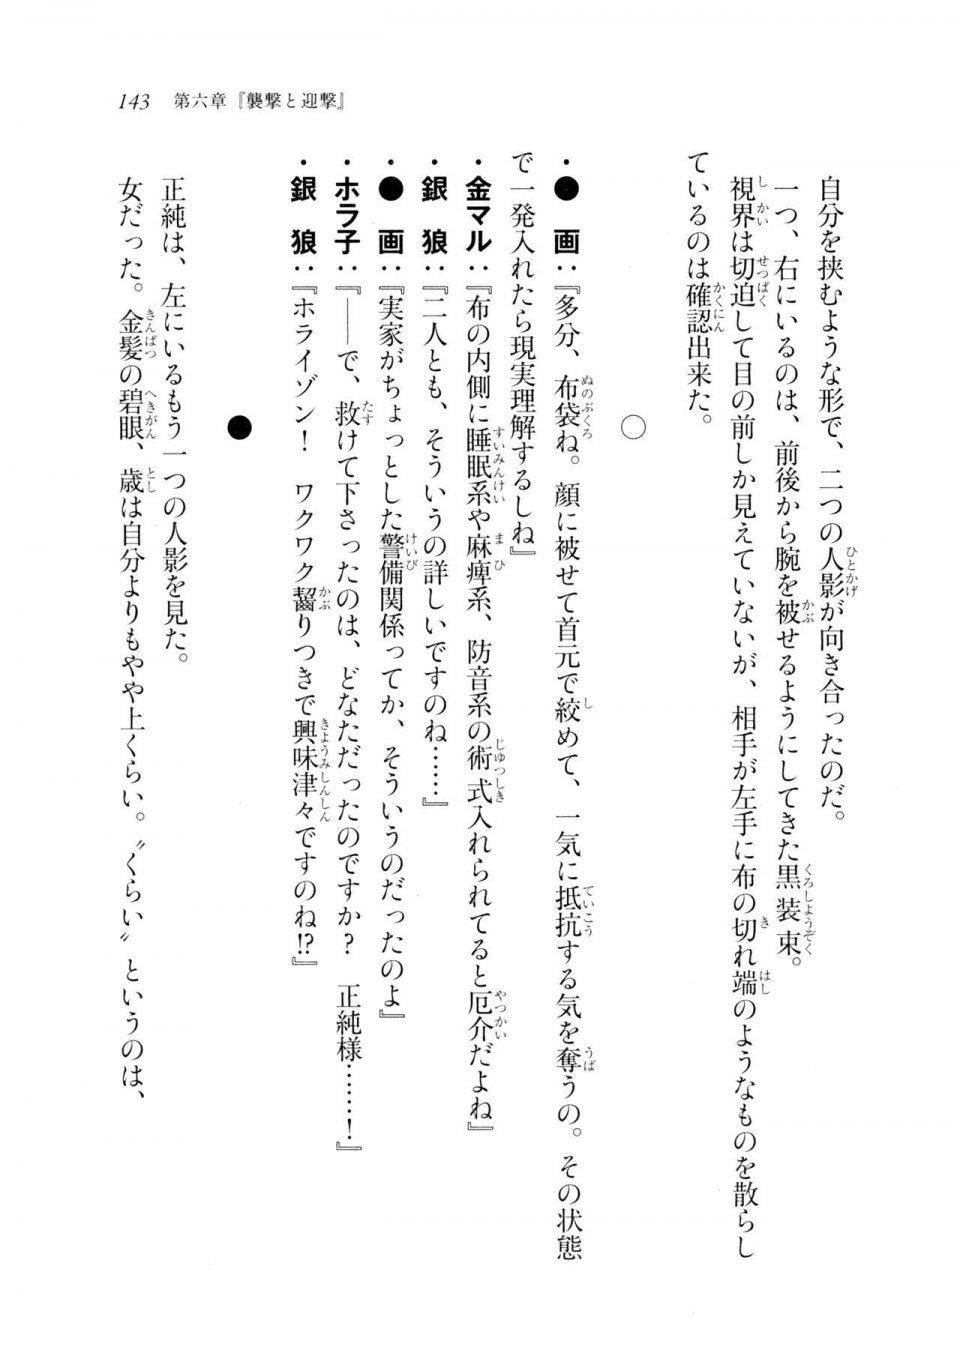 Kyoukai Senjou no Horizon LN Sidestory Vol 2 - Photo #141